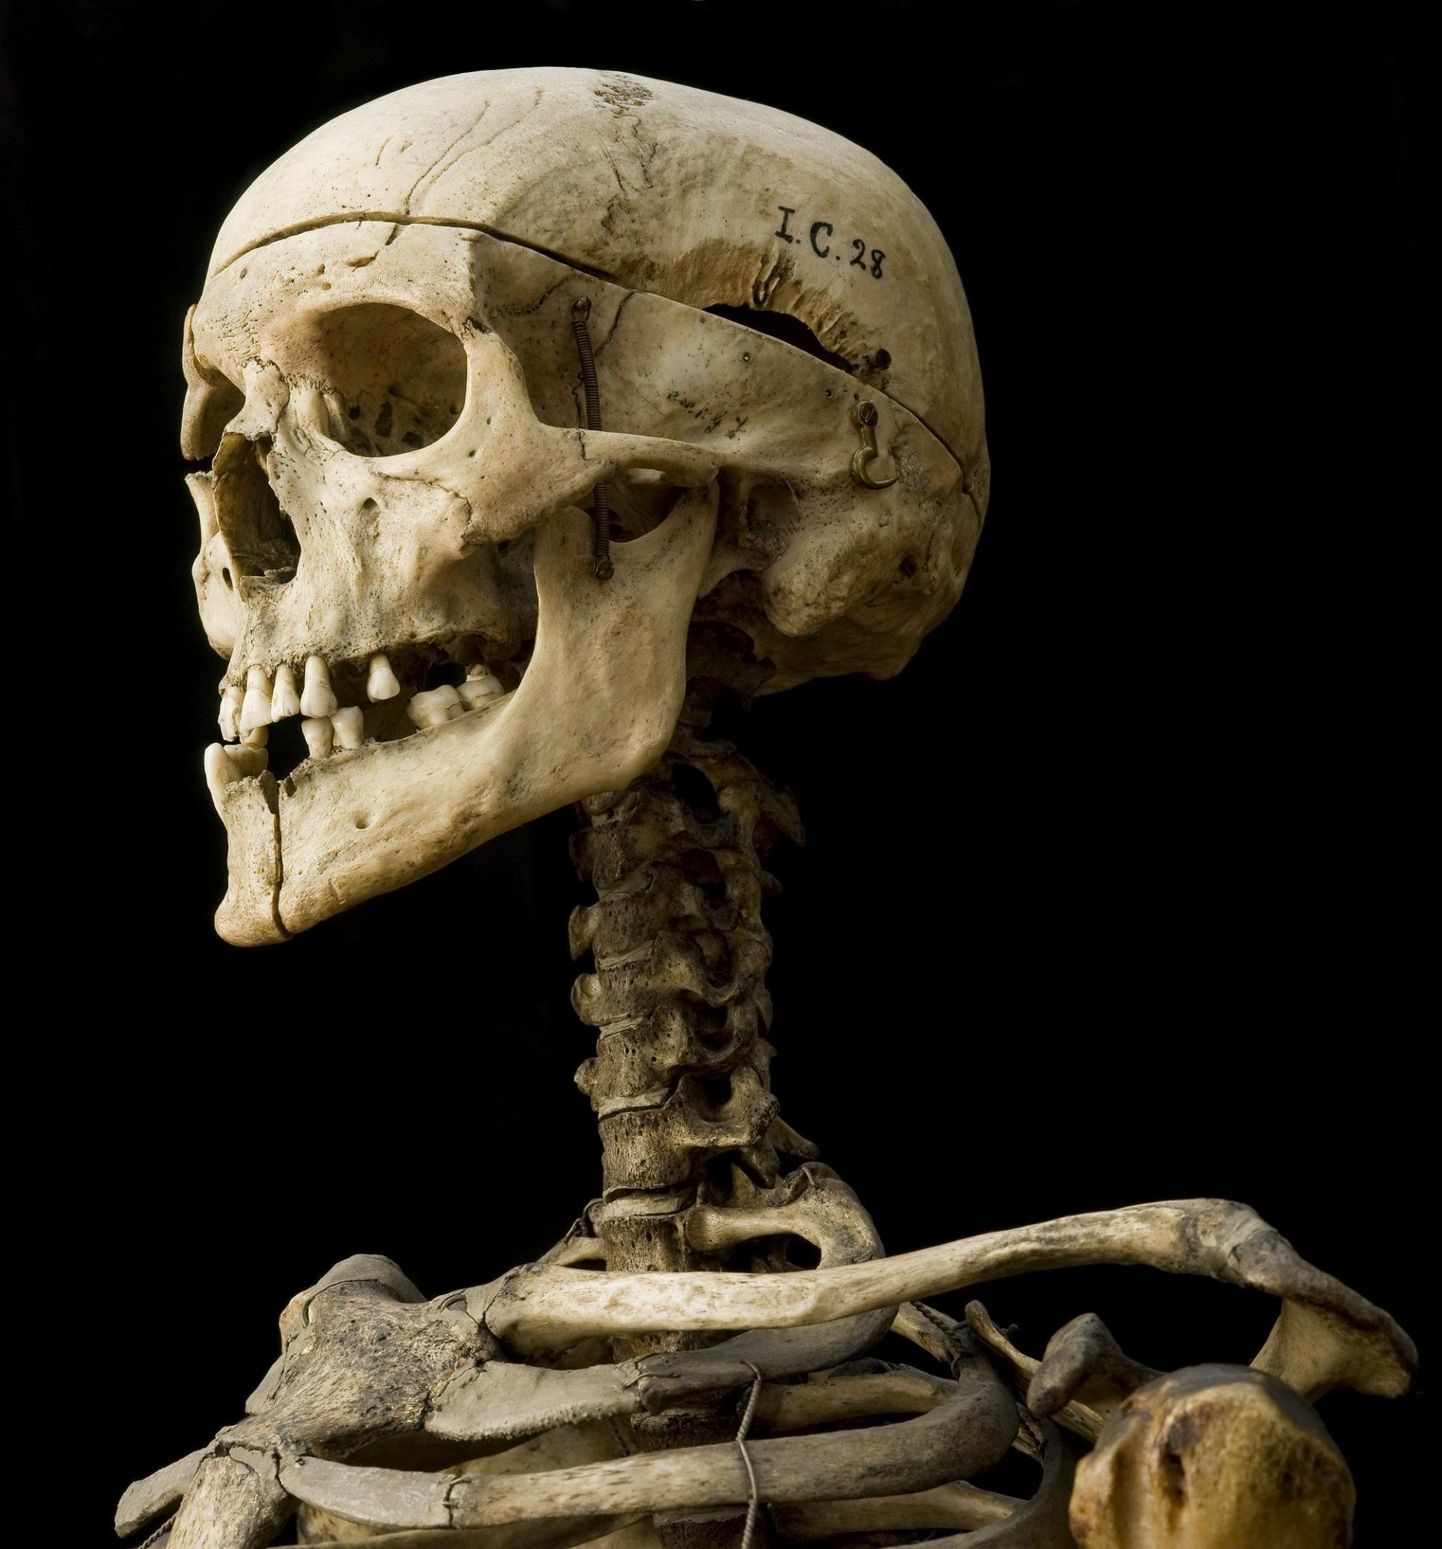 William Burke’i skelett asub tänaseni Edinburghi ülikooli kirurgiamuuseumis. Häbipostis oma võigaste kuritegude eest, paneb see eksponaat muuseumikülastajad kindlasti meditsiinieetika üle juurdlema.